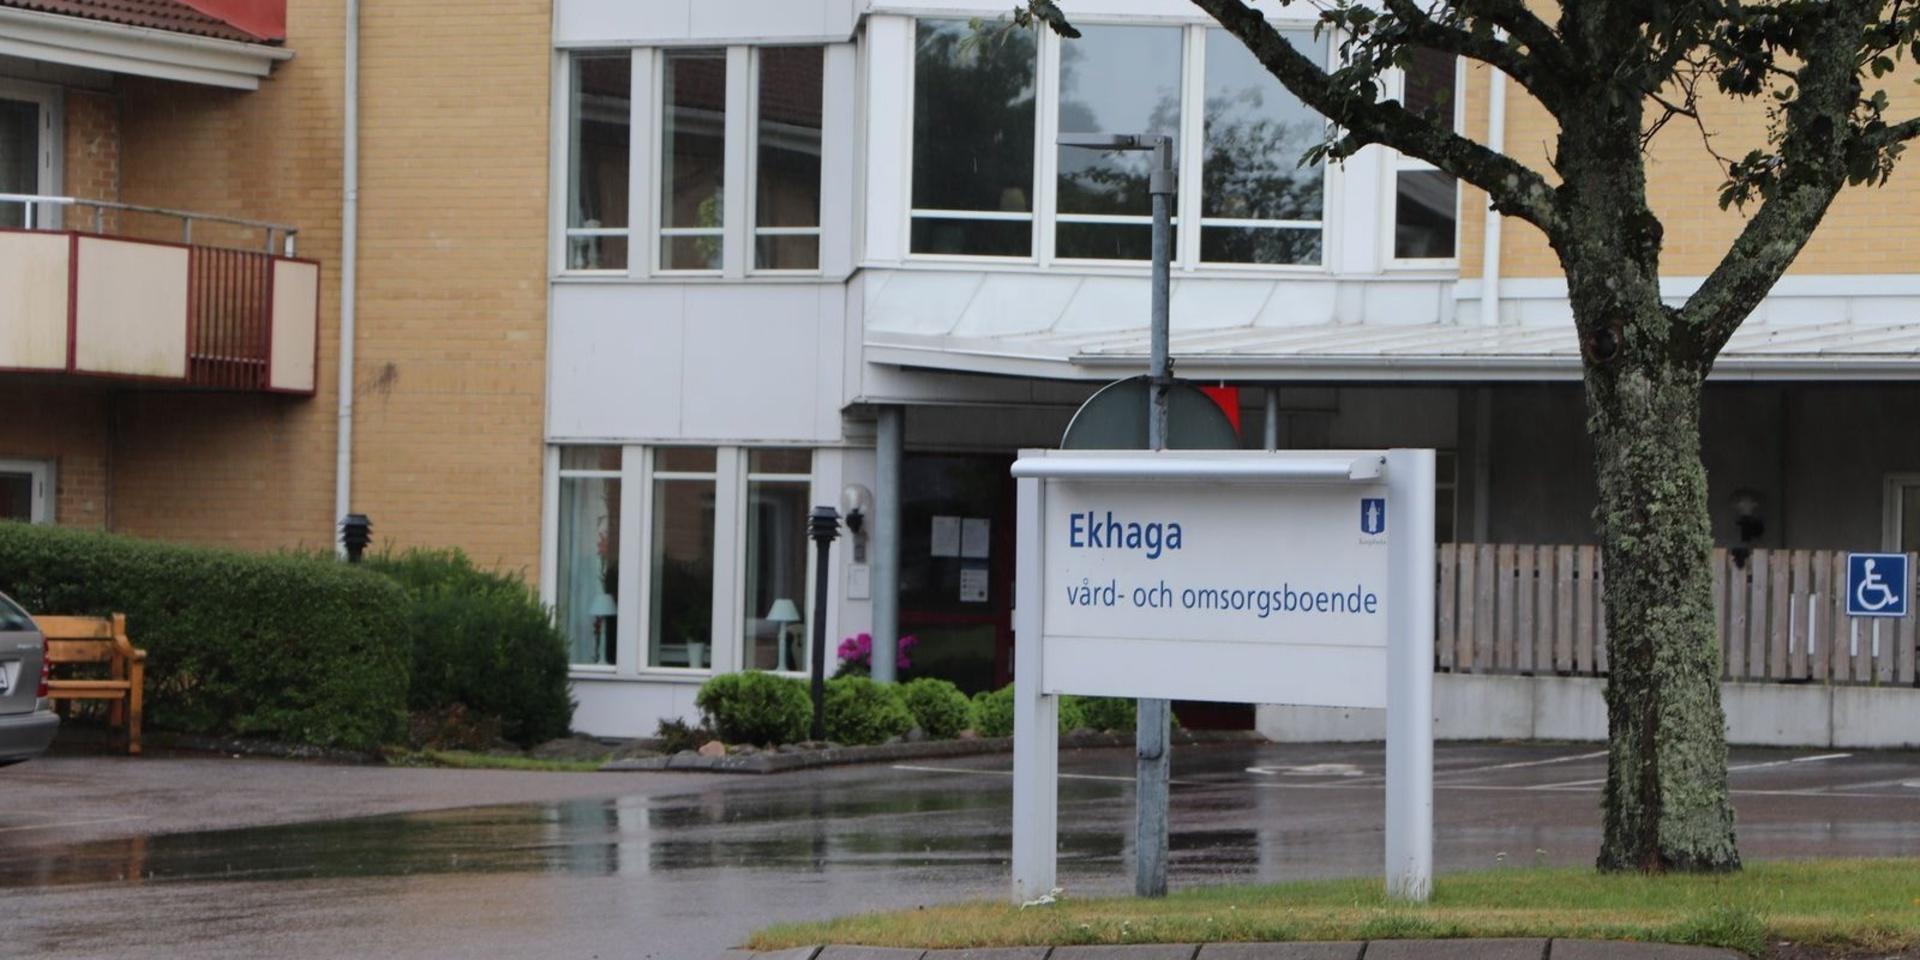 Skandalerna har avlöst varandra på Ekhaga. Nu reagerar Socialdemokraternas Maj-Britt Rane Andersson.